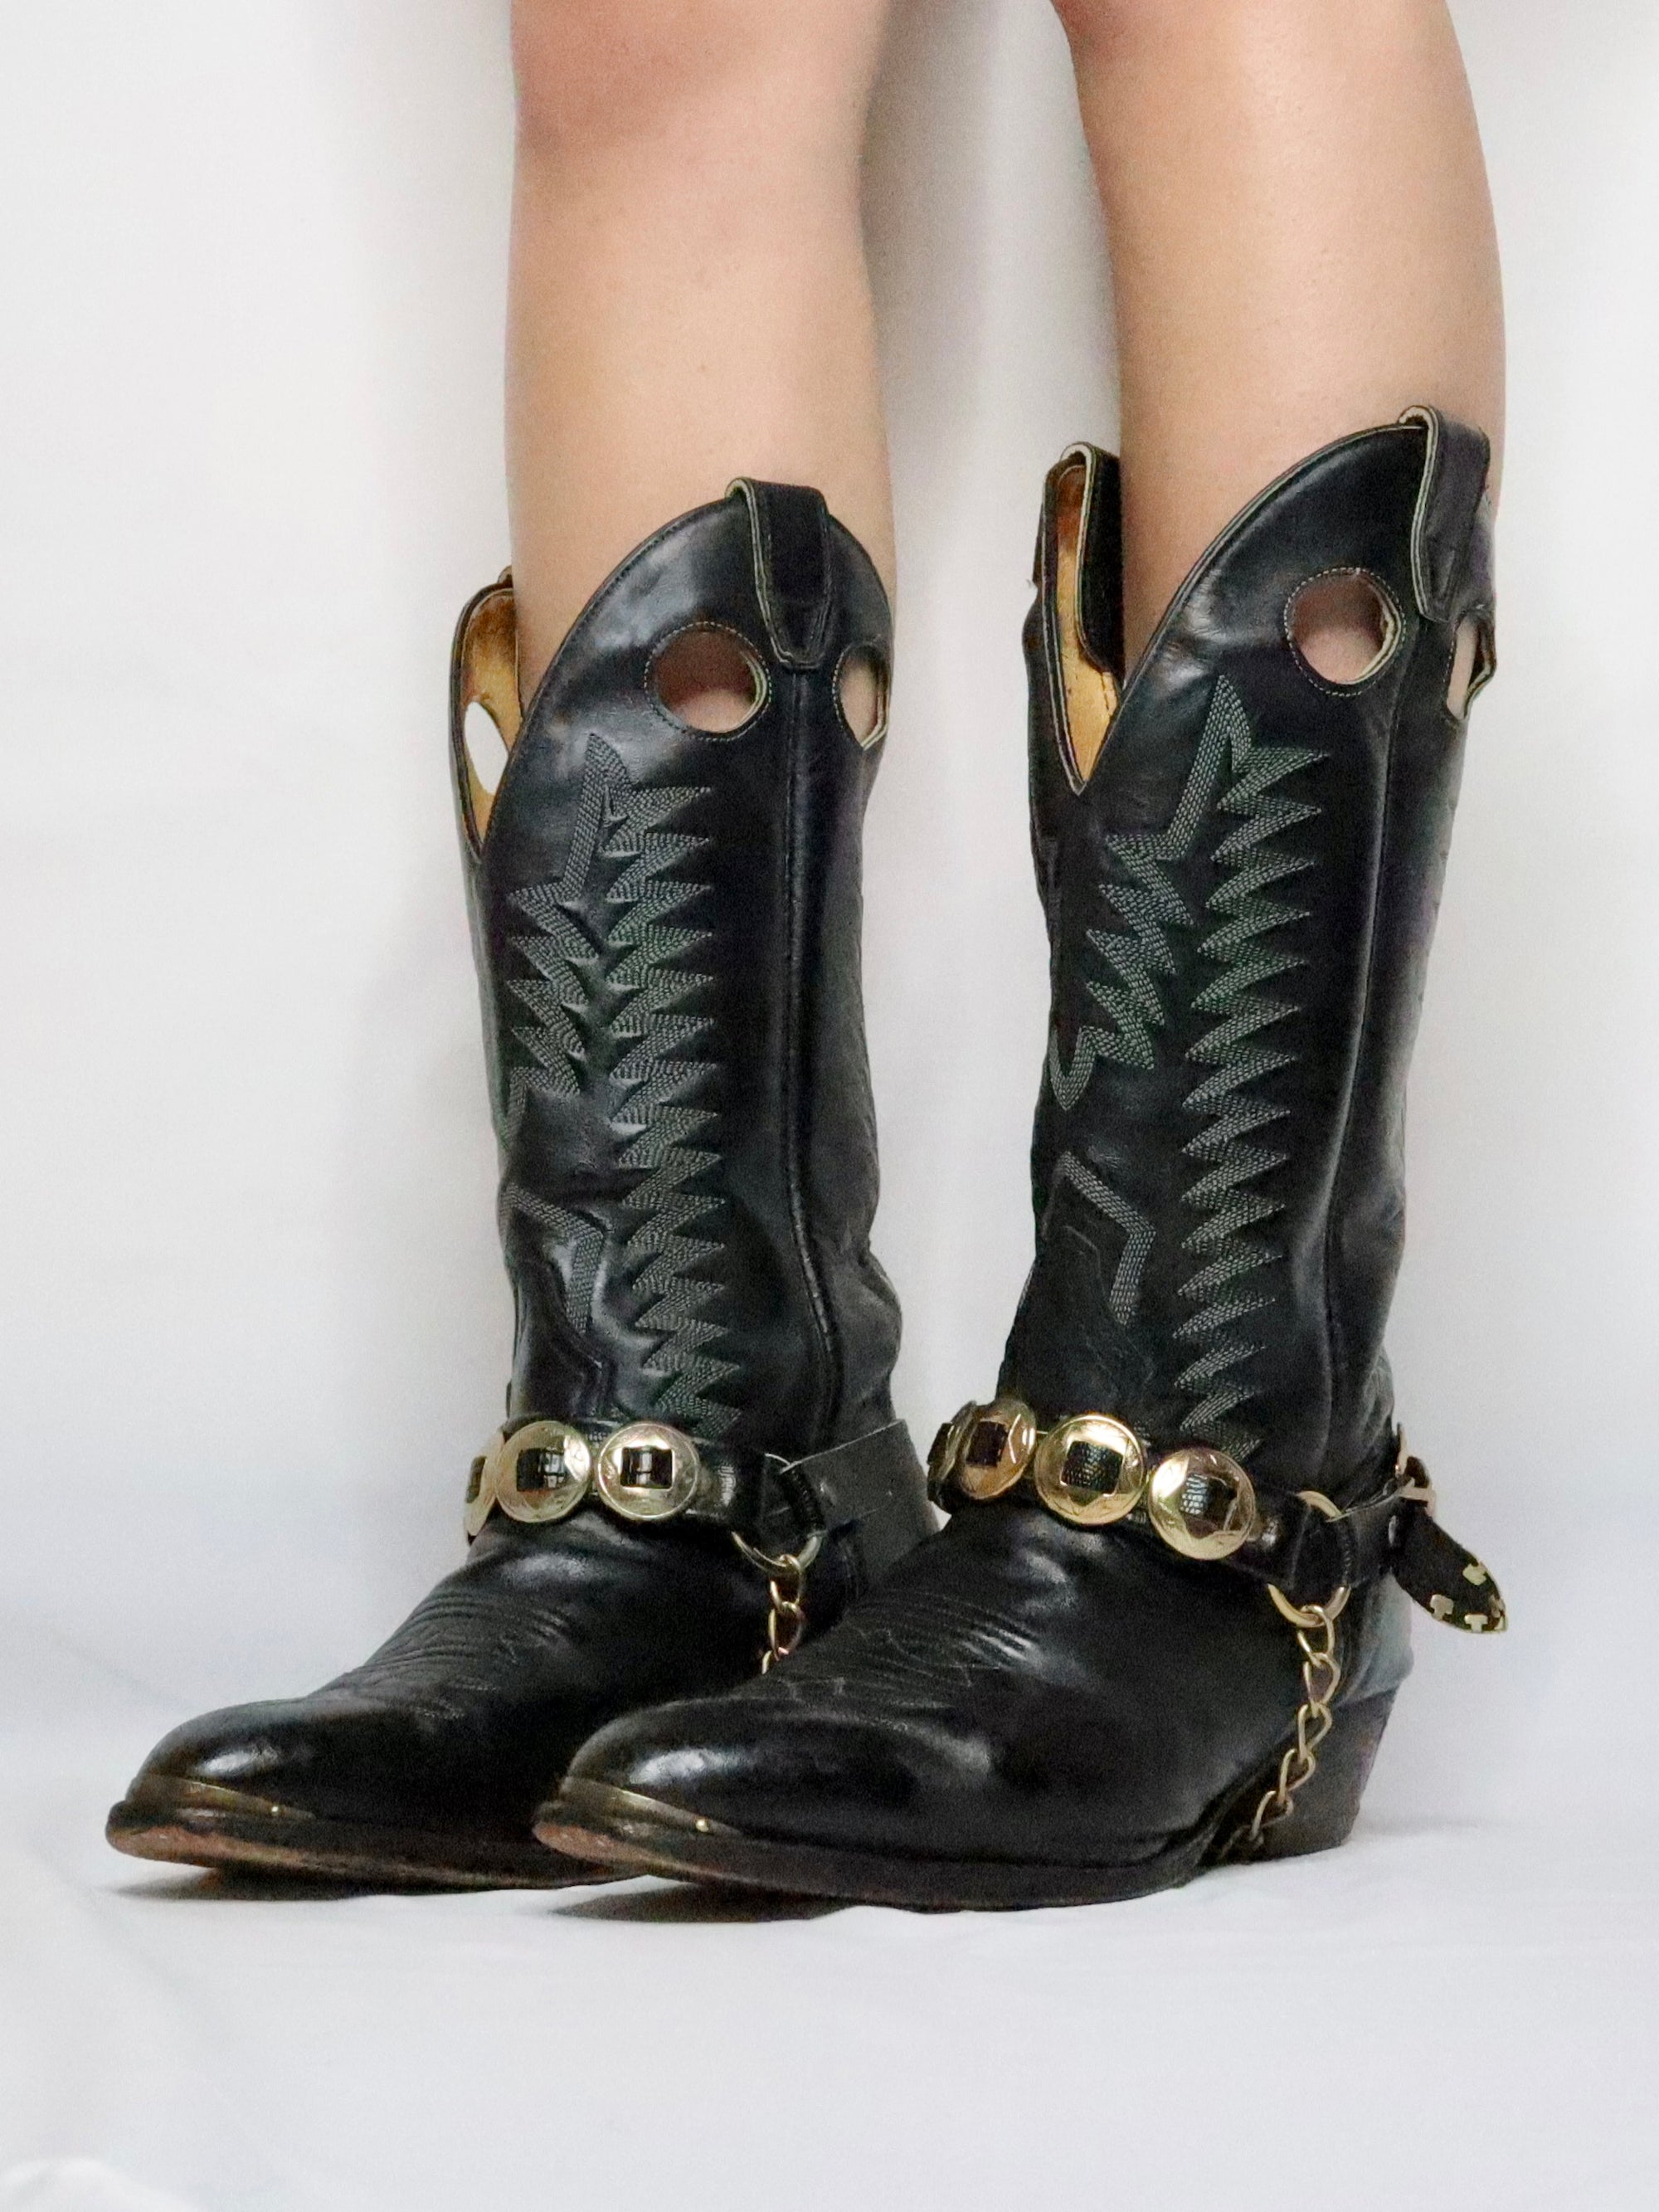 Black Cowboy Boots (8.5-9 US)